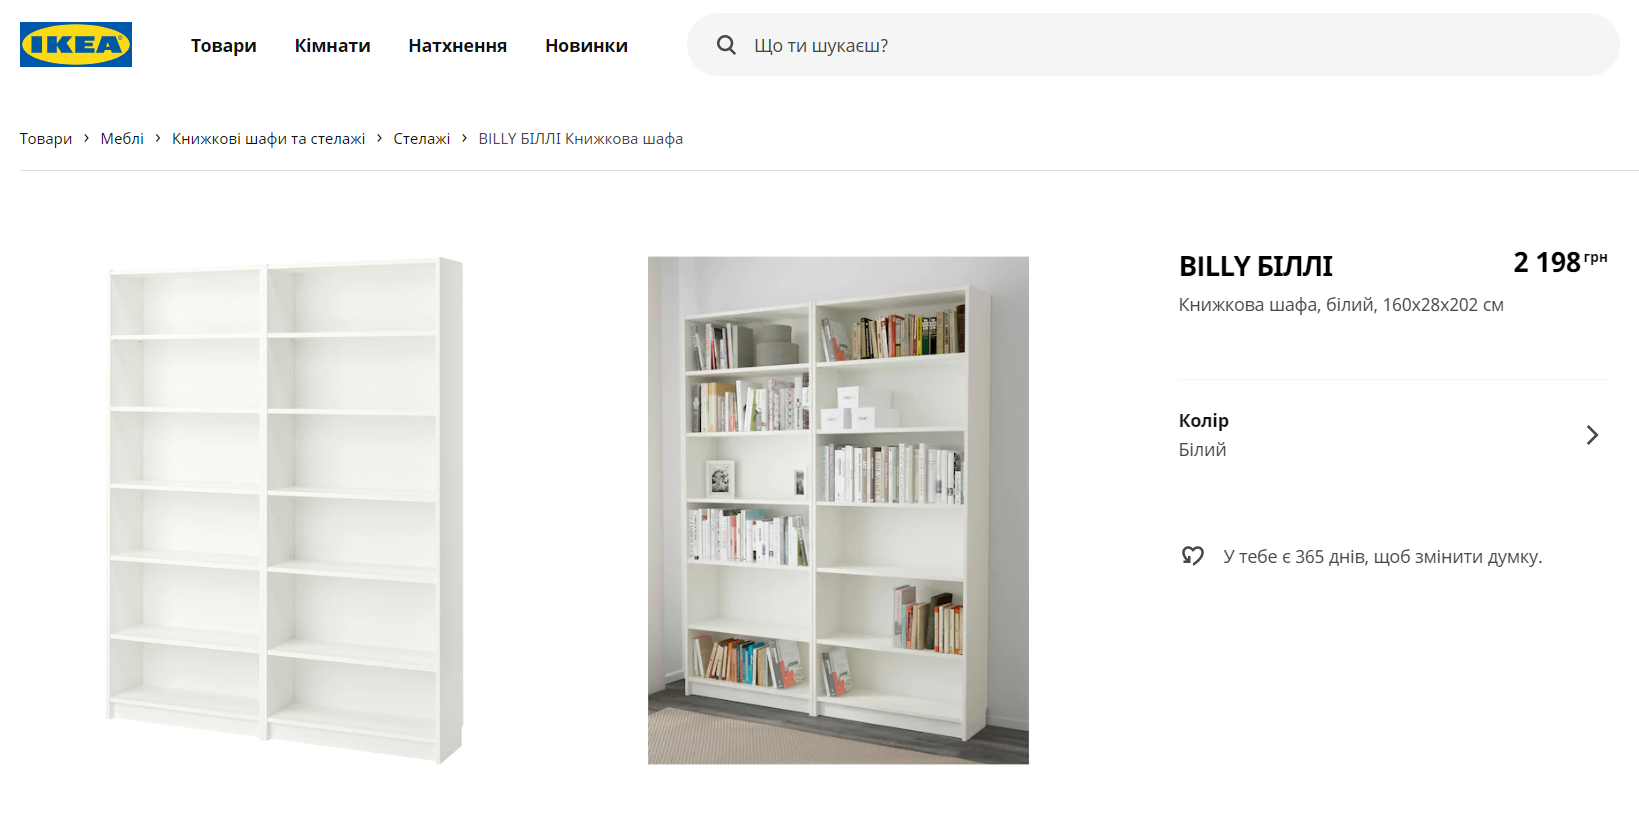 Приклад товарів на українському сайті IKEA